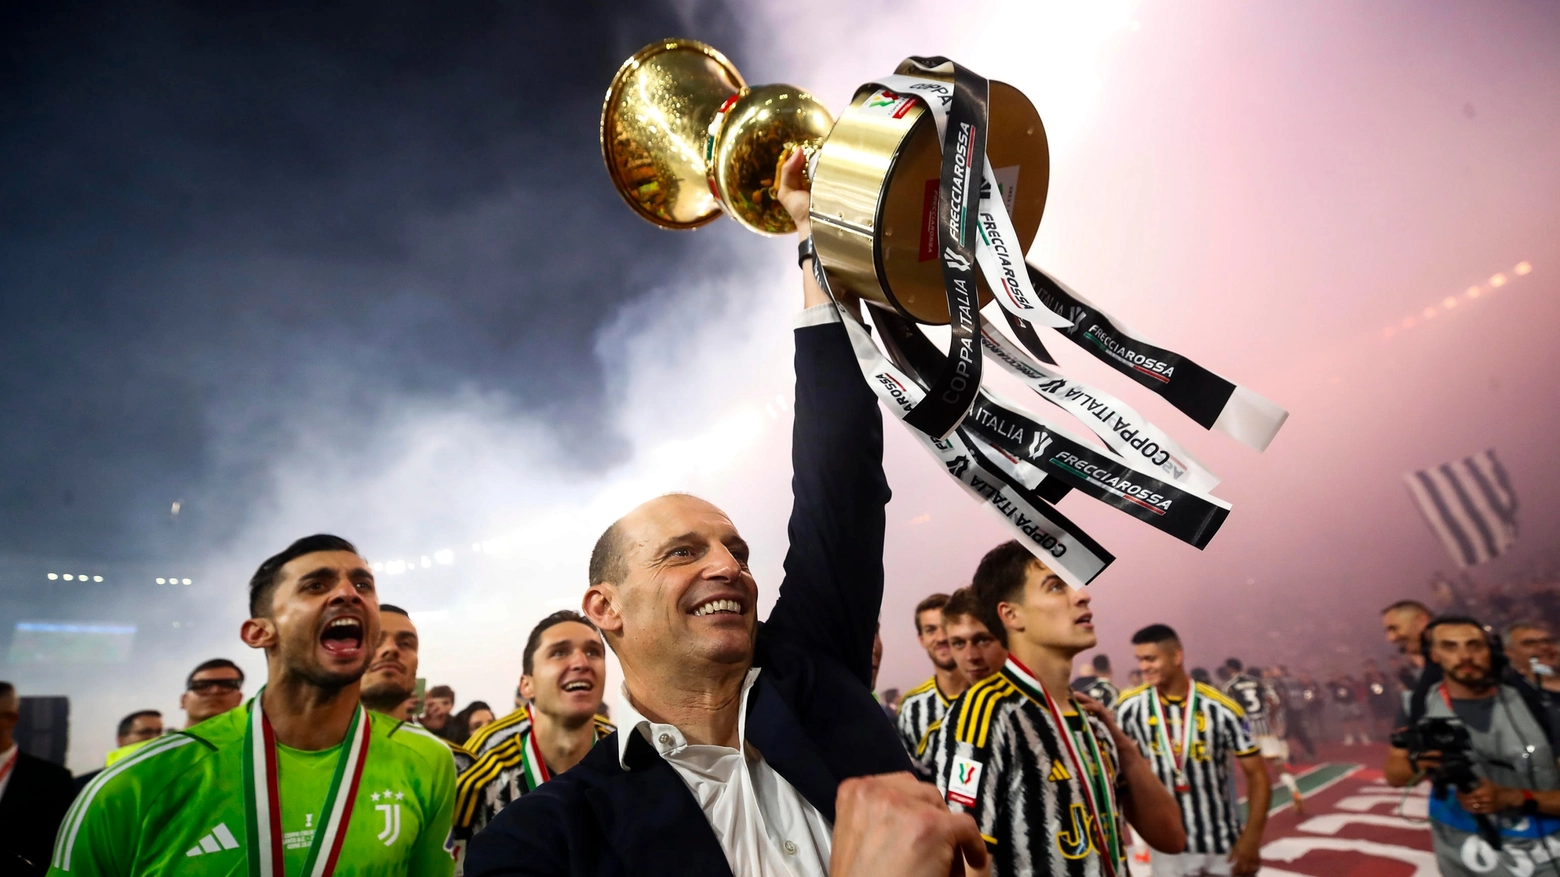 La Juventus vince la 15esima Coppa Italia e Allegri suggerisce l'addio: "La società farà le sue scelte..."